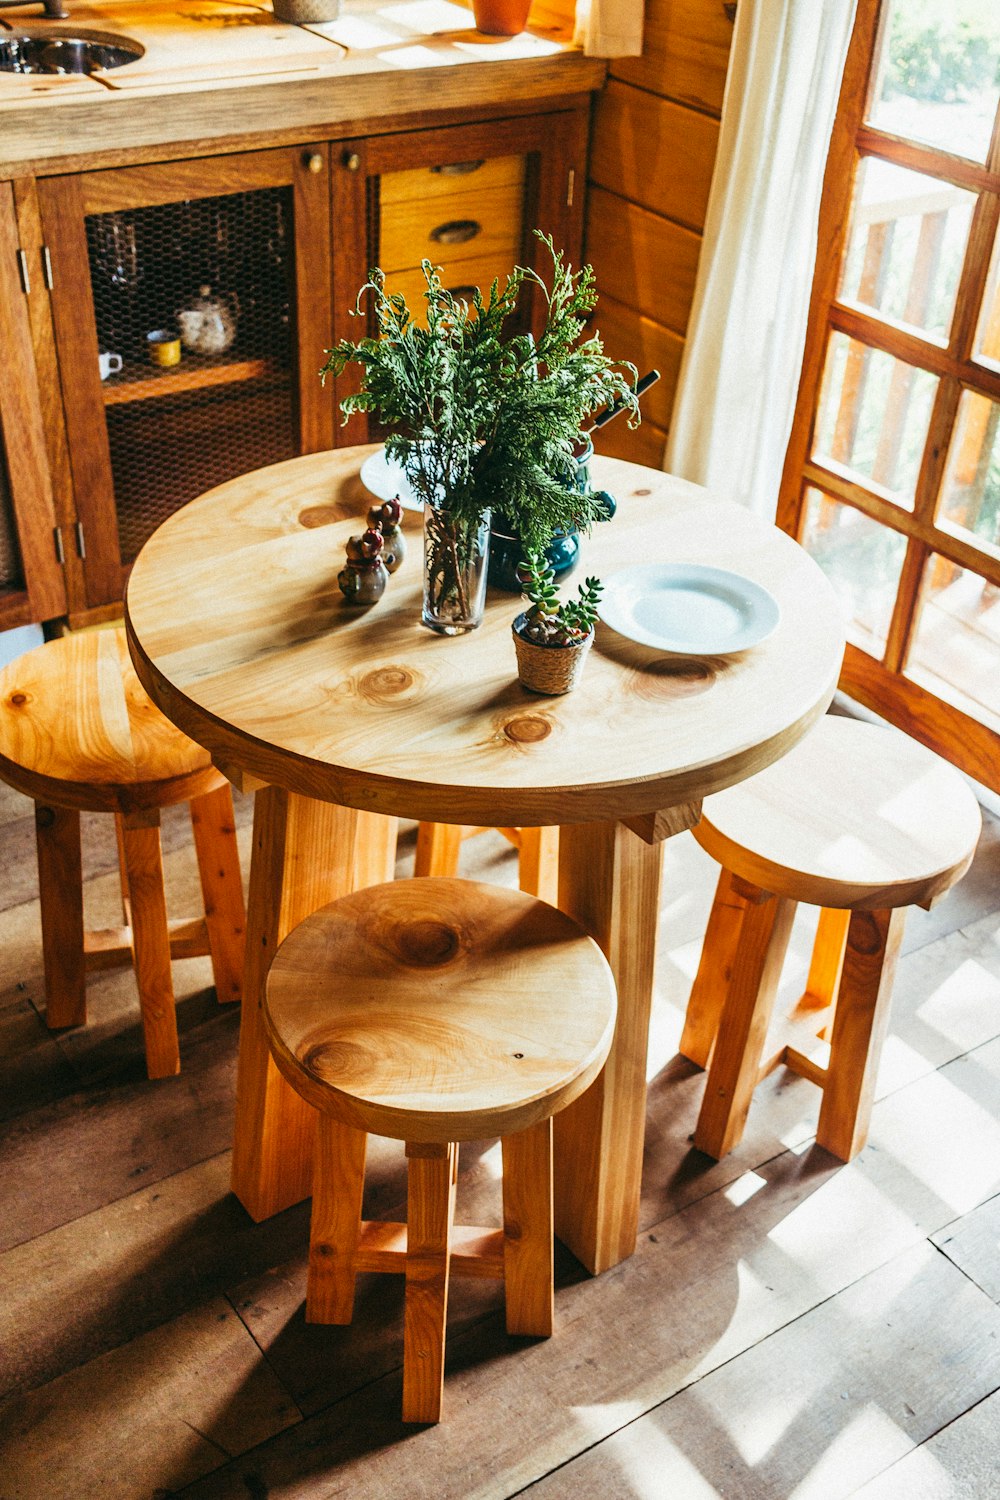 piante sul tavolo di legno marrone all'interno